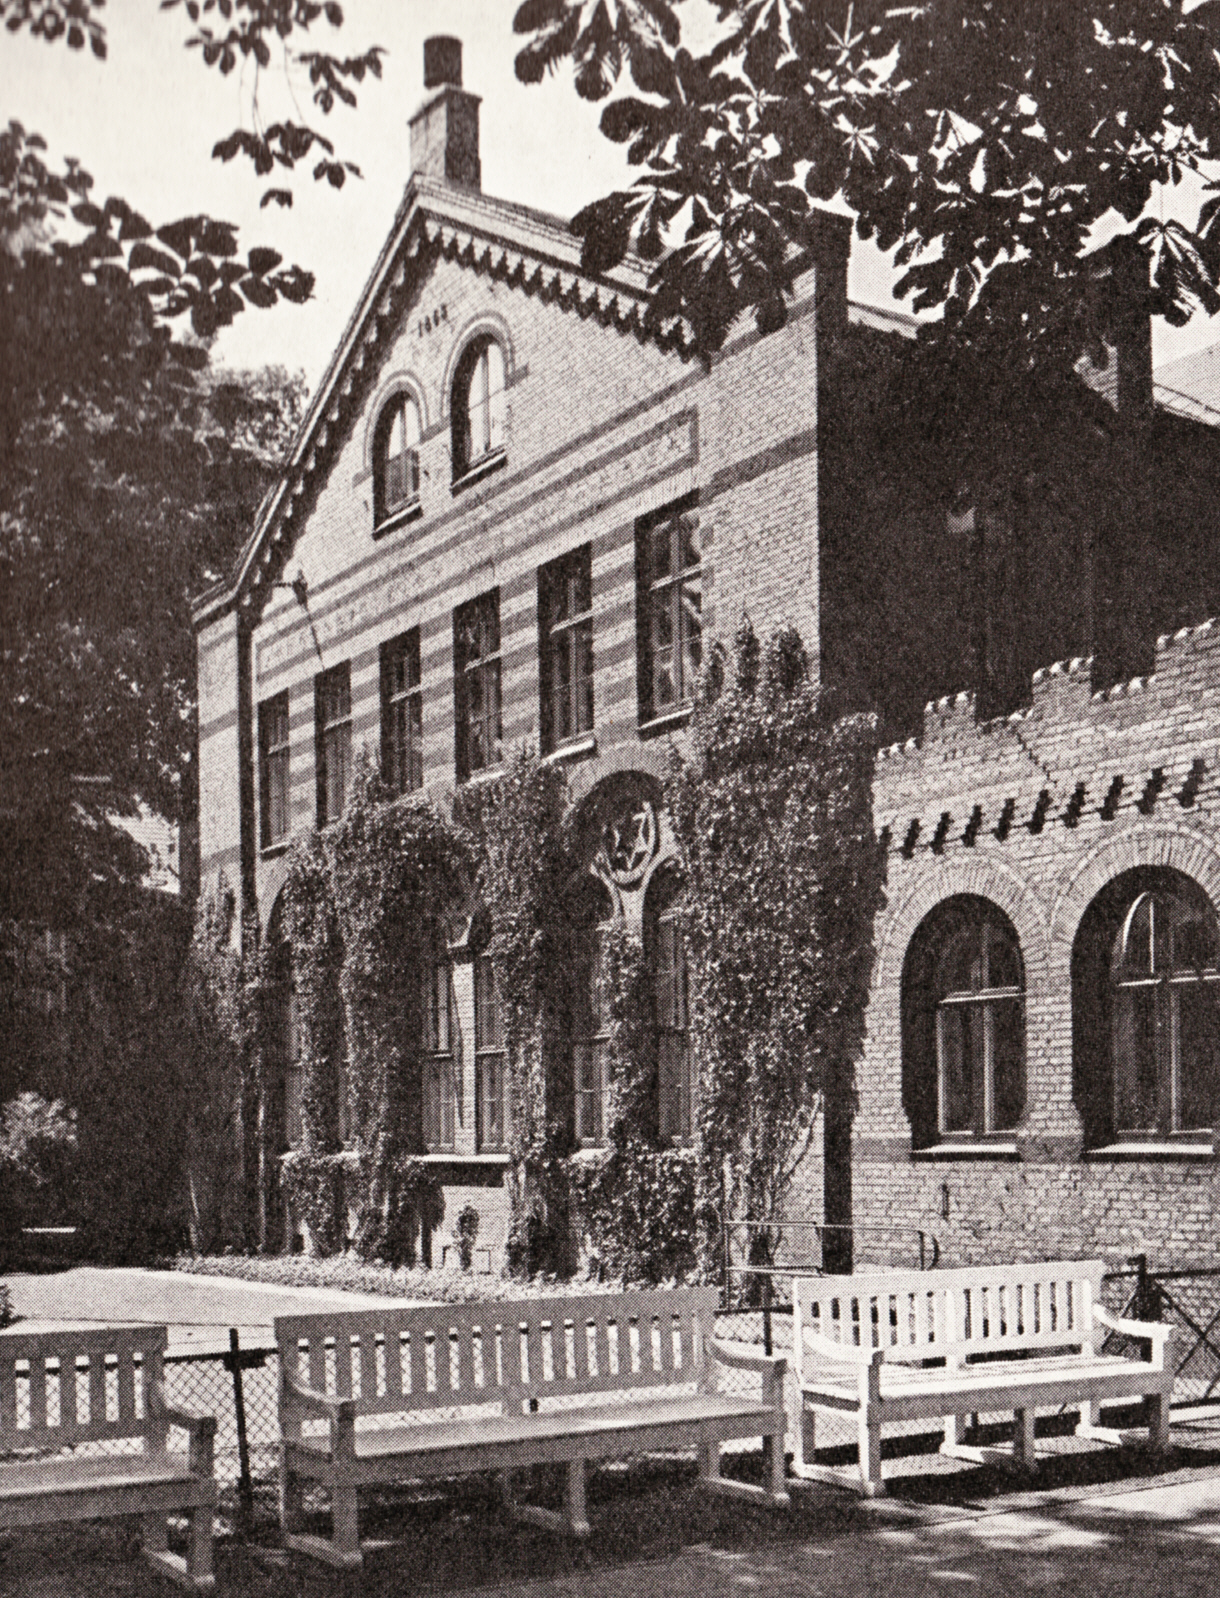 Falkoner Alleens skole kort før nedrivningen, billede fra ca. 1950